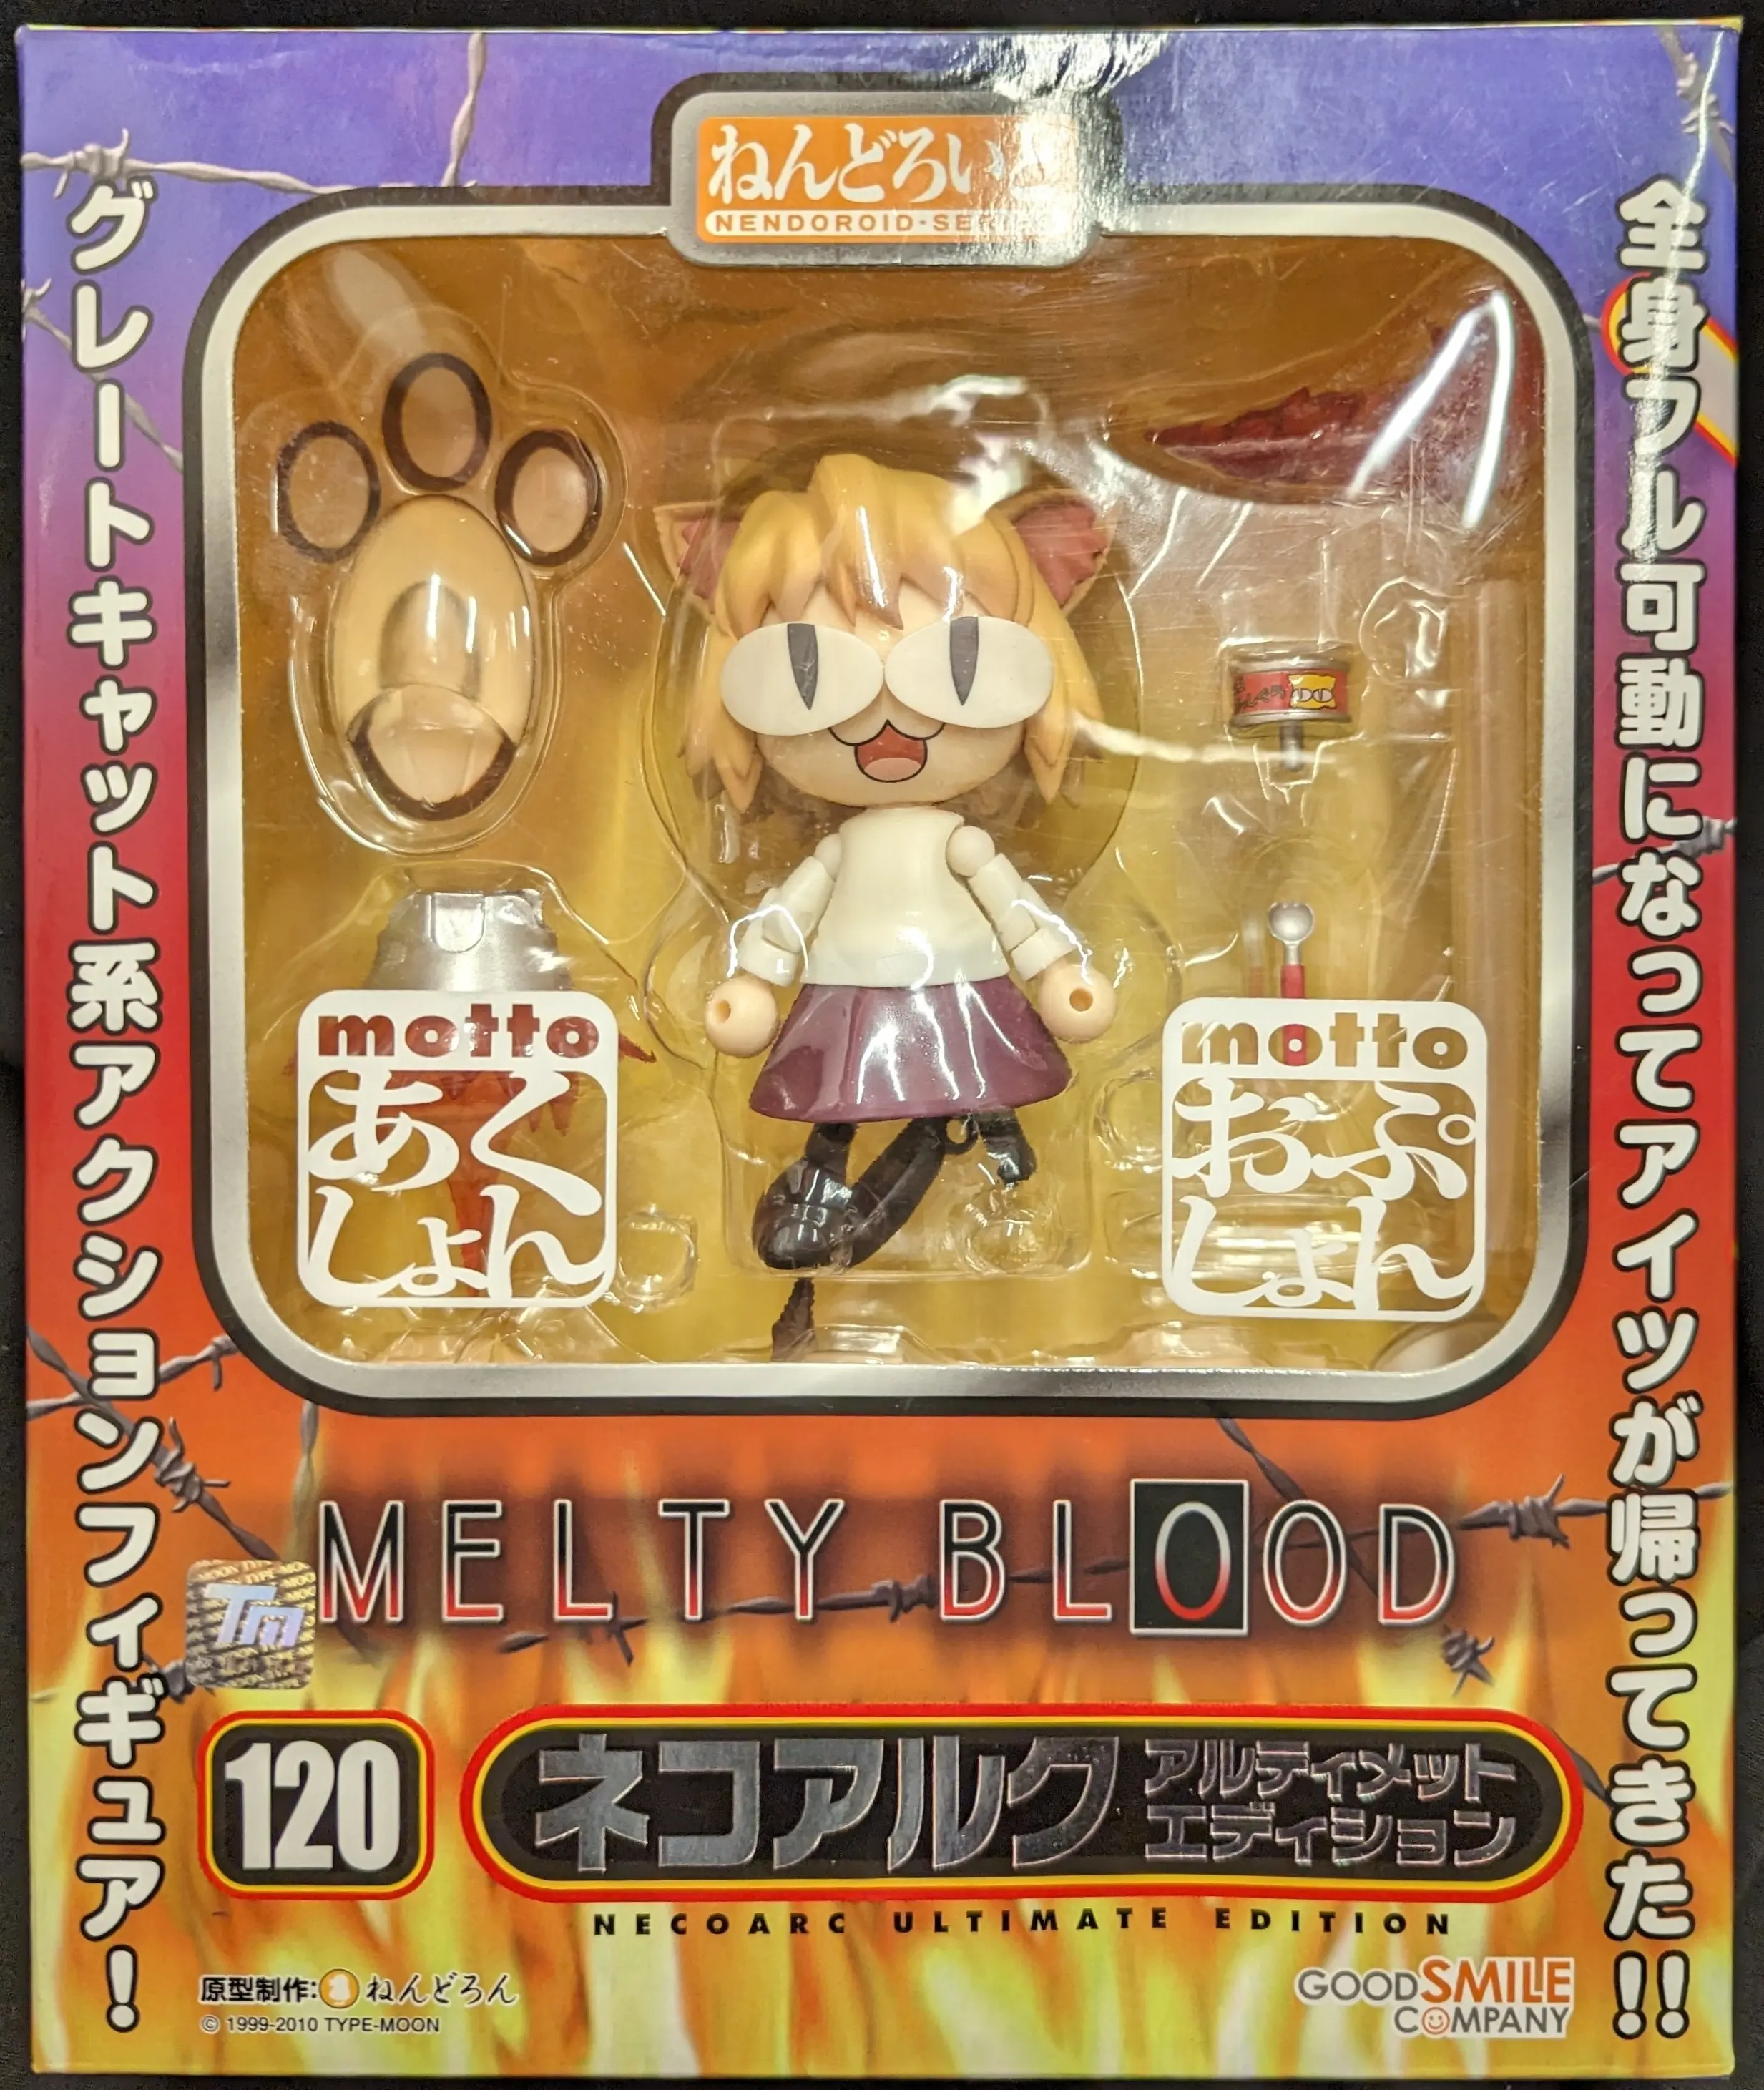 Nendoroid - MELTY BLOOD / Neco Arc